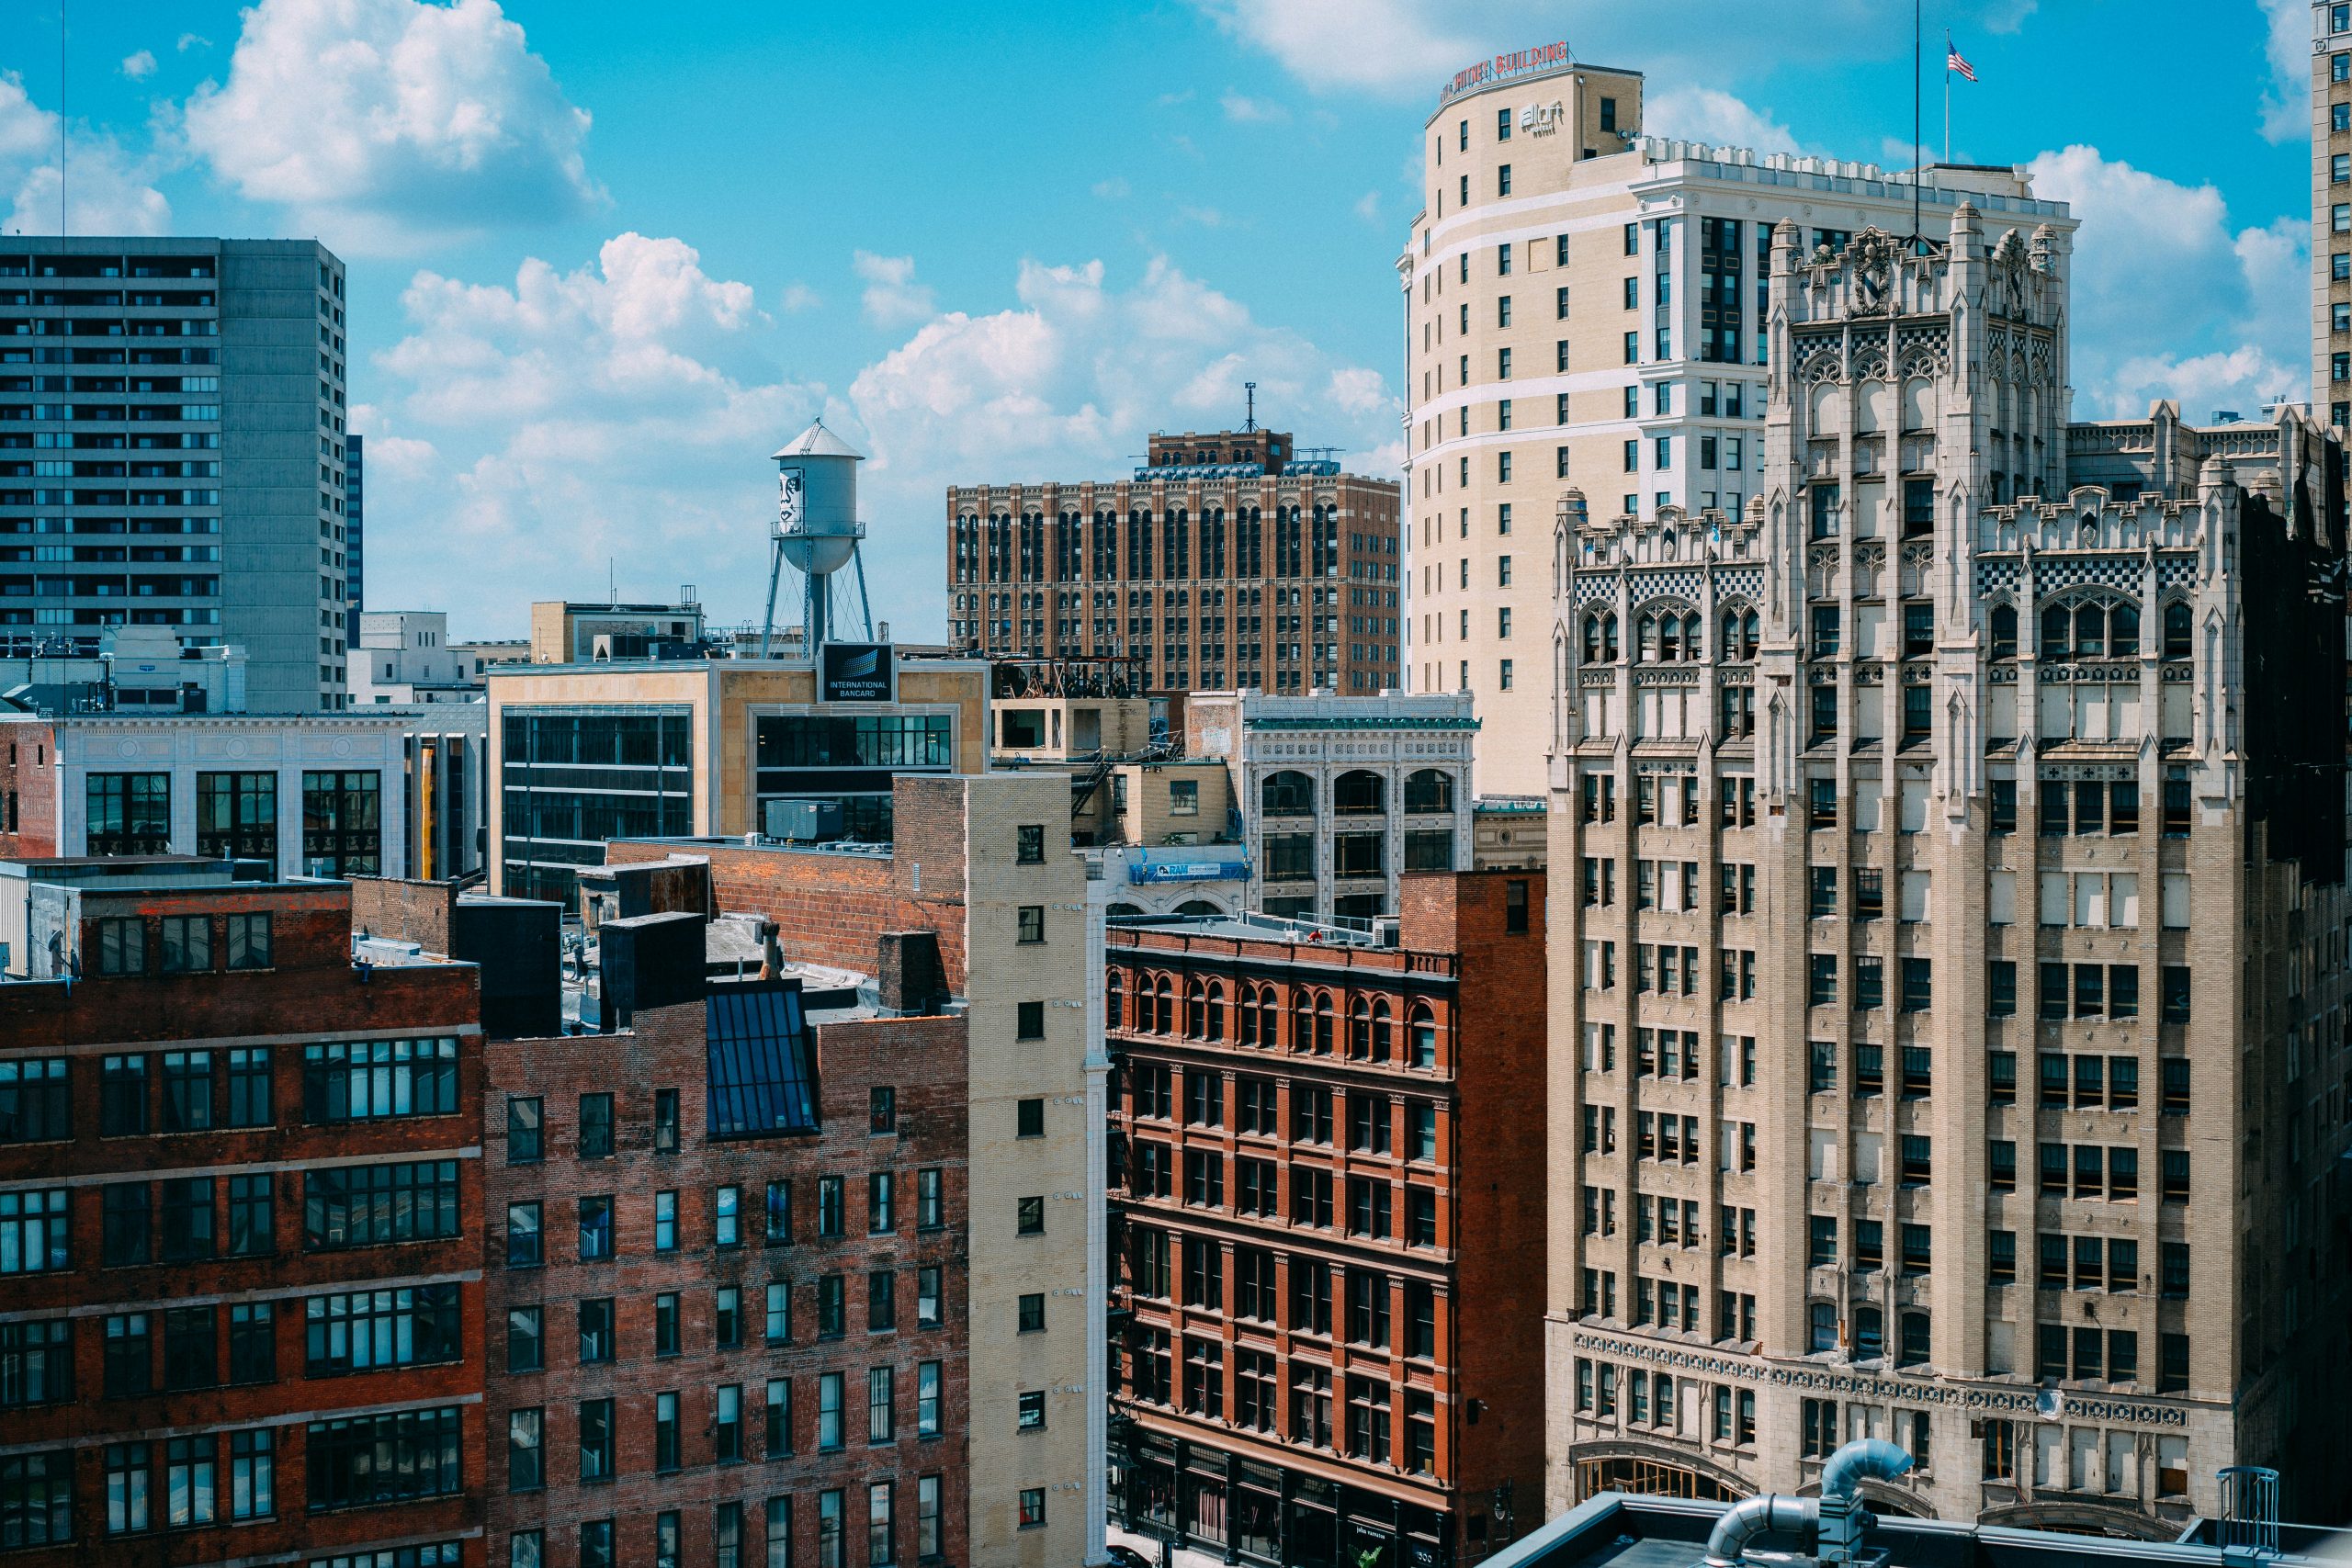 aerial view of buildings in Detroit